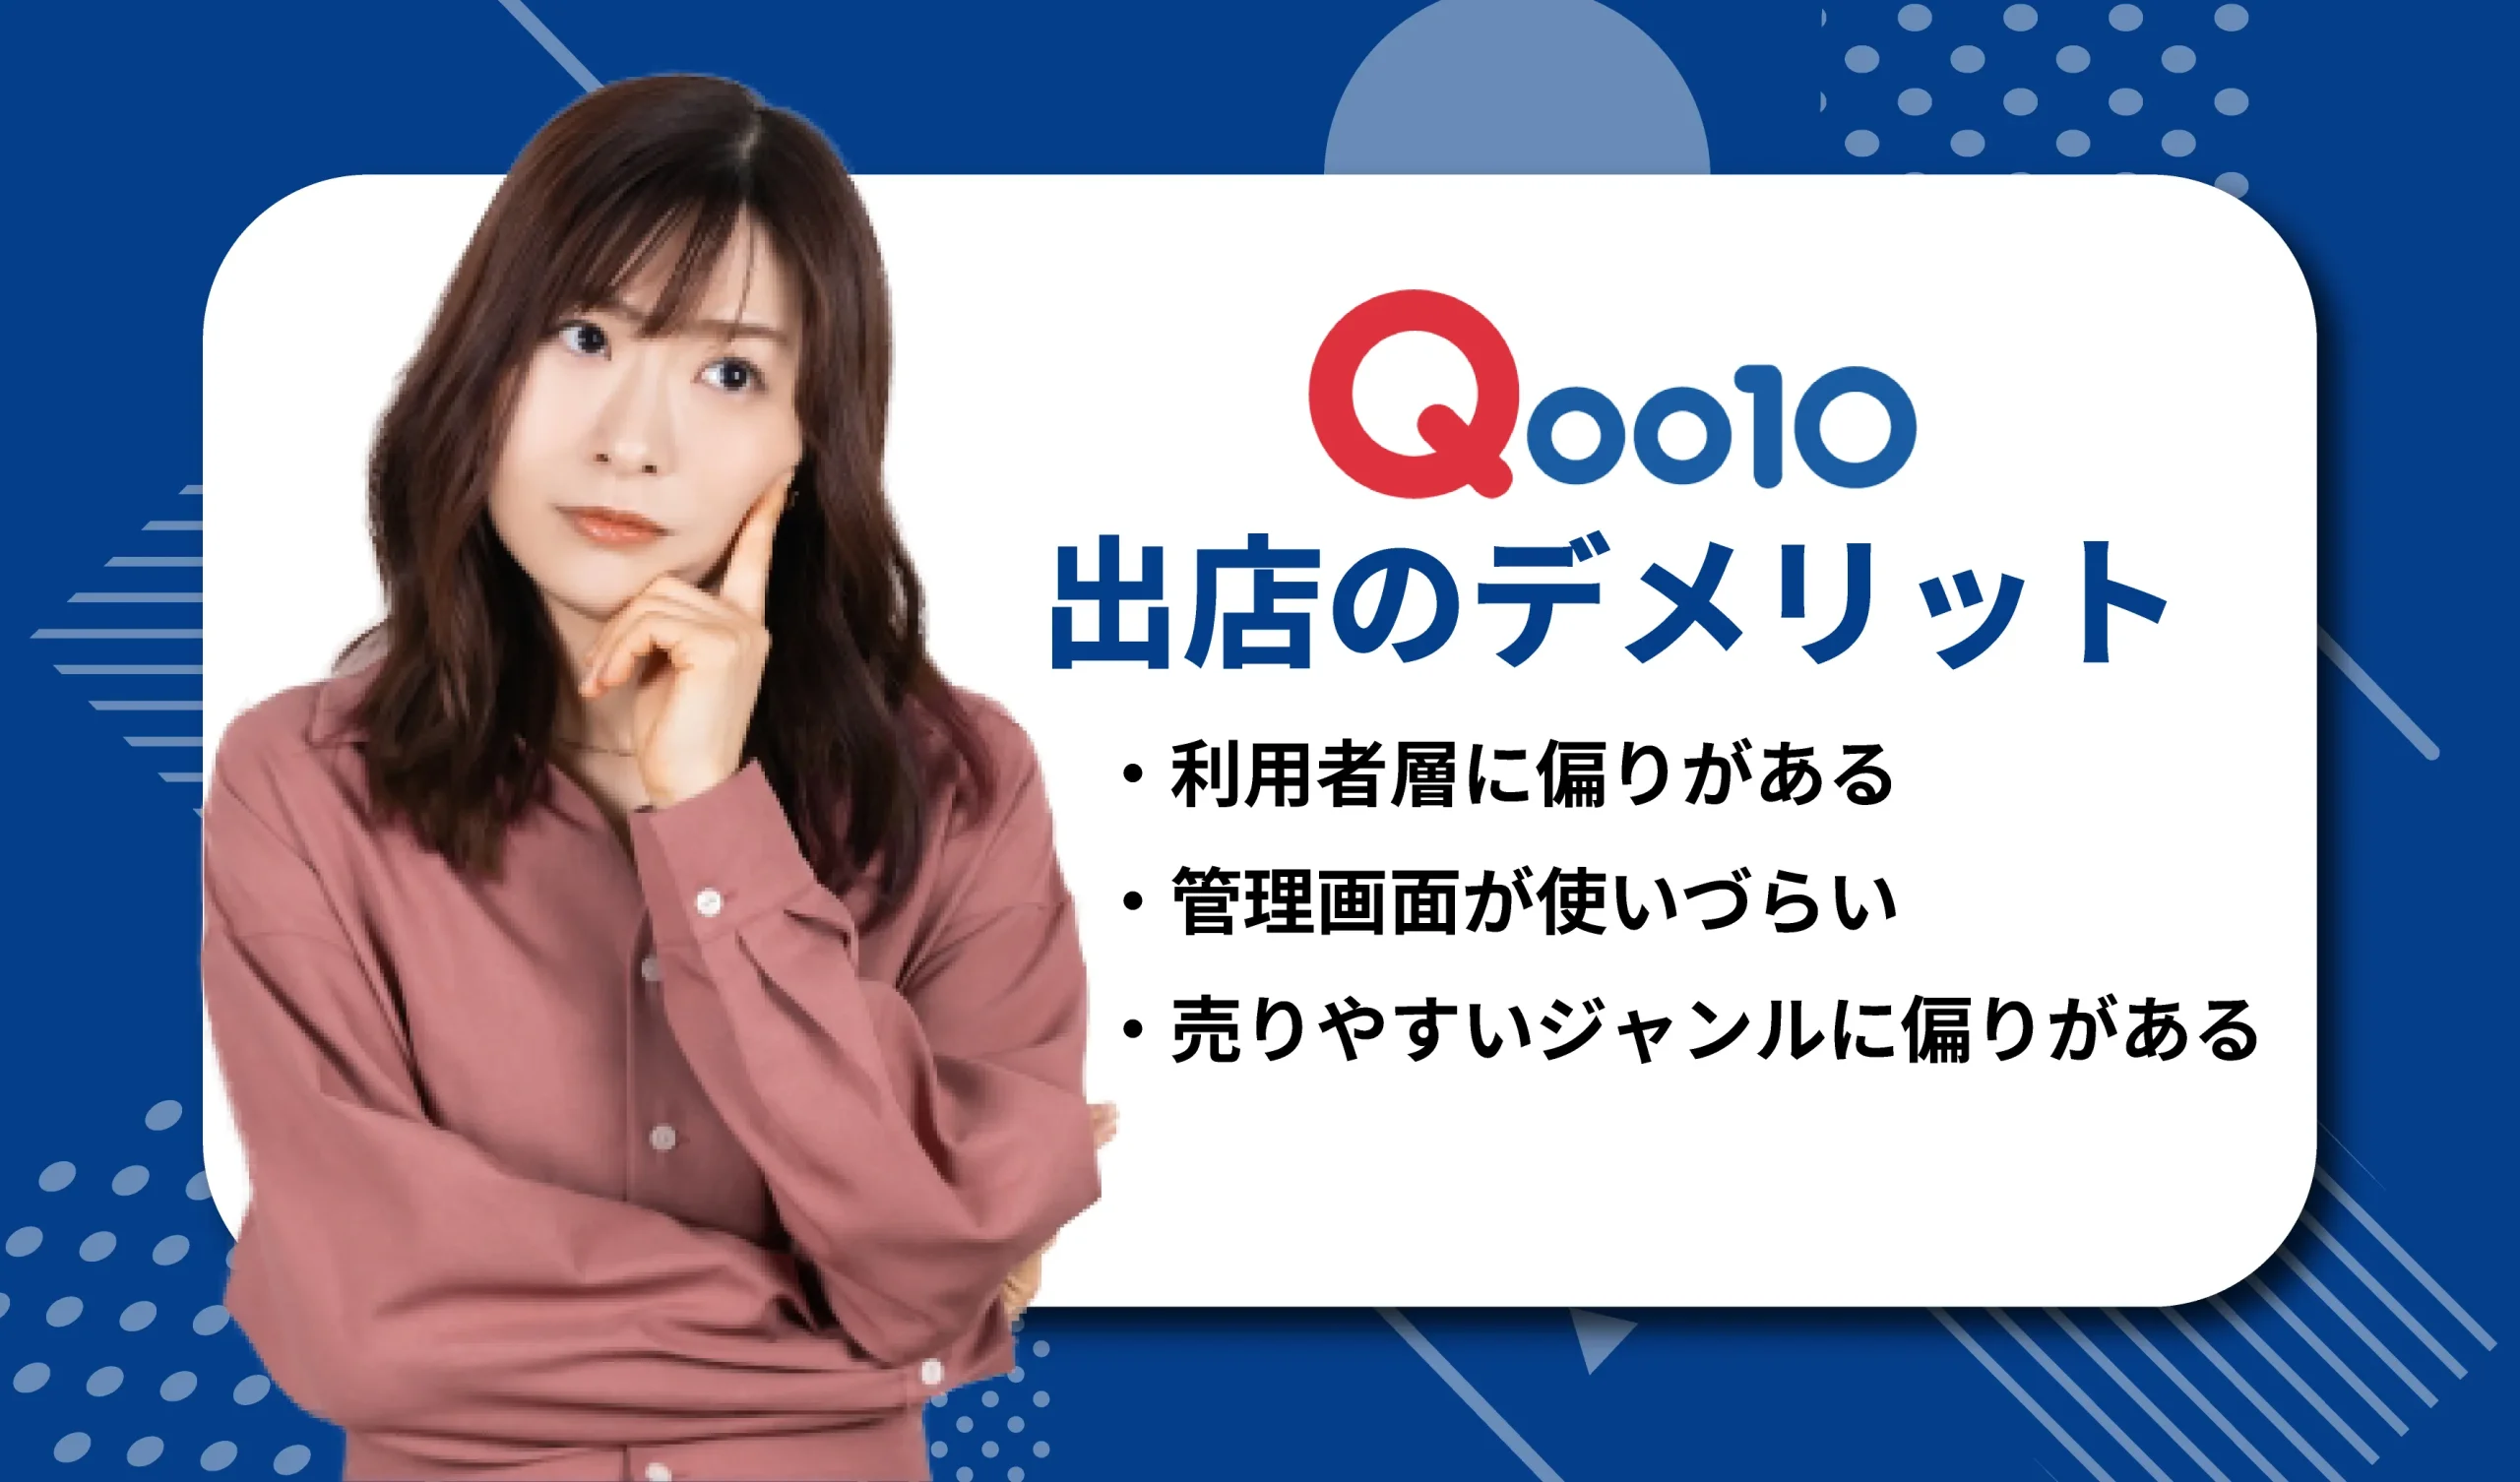 Qoo10に出店するデメリット